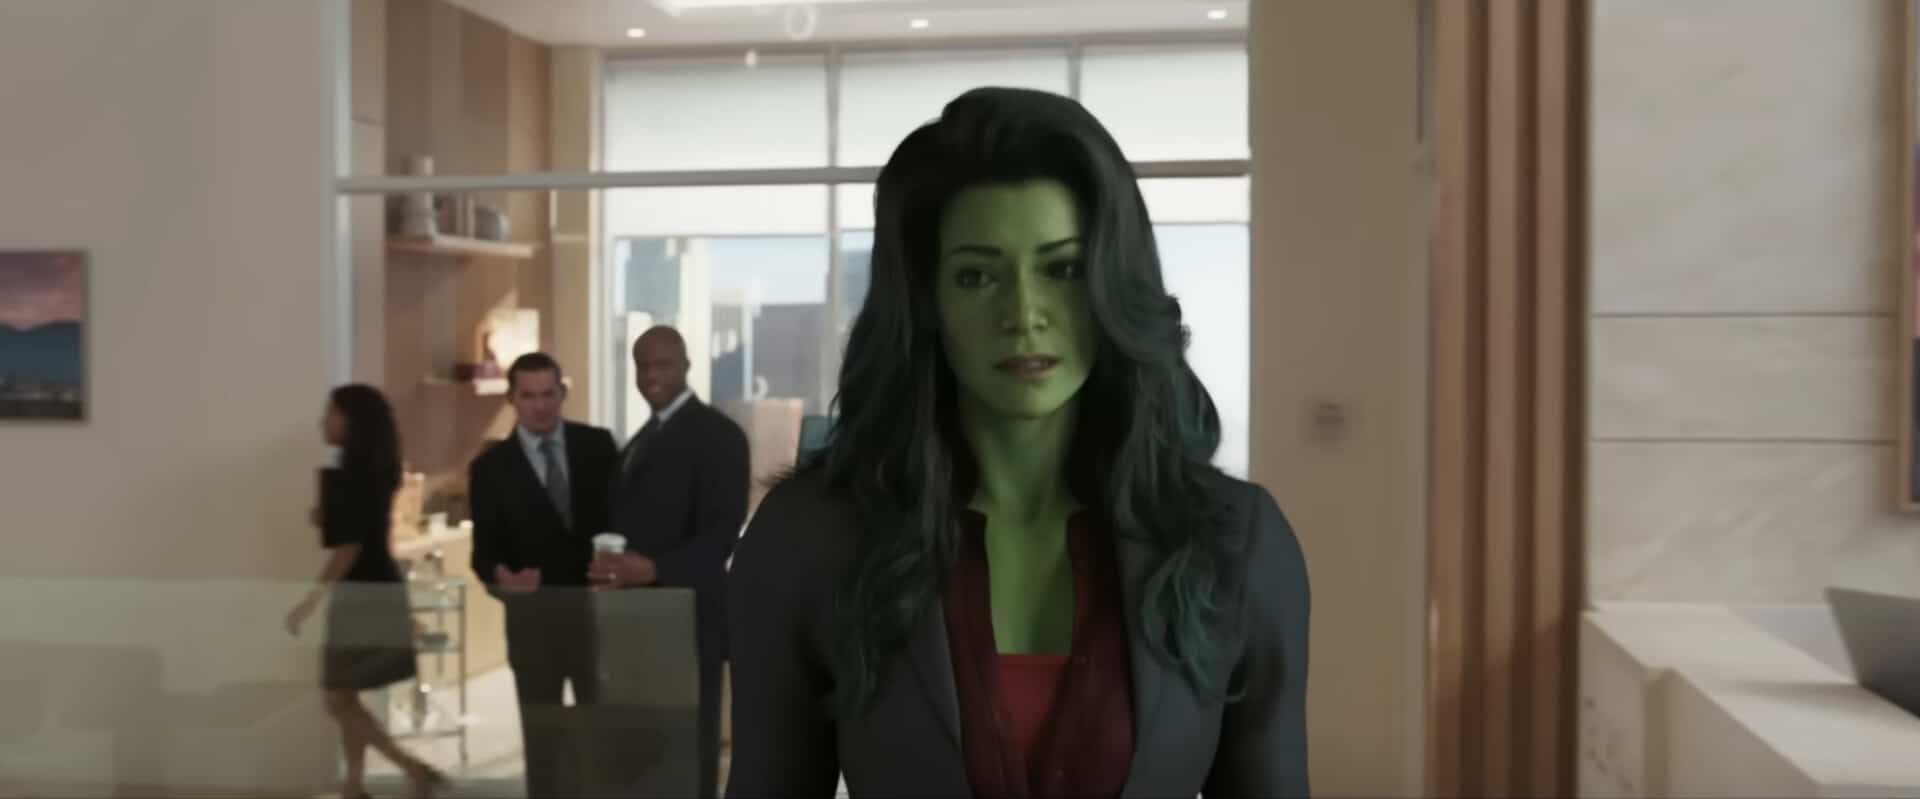 Les problèmes de qualité de CGI Jennifer Walters dans la bande-annonce de She-Hulk indiquent des problèmes de traitement des dispositifs visuels et des effets visuels du MCU Marvel Cinematic Universe